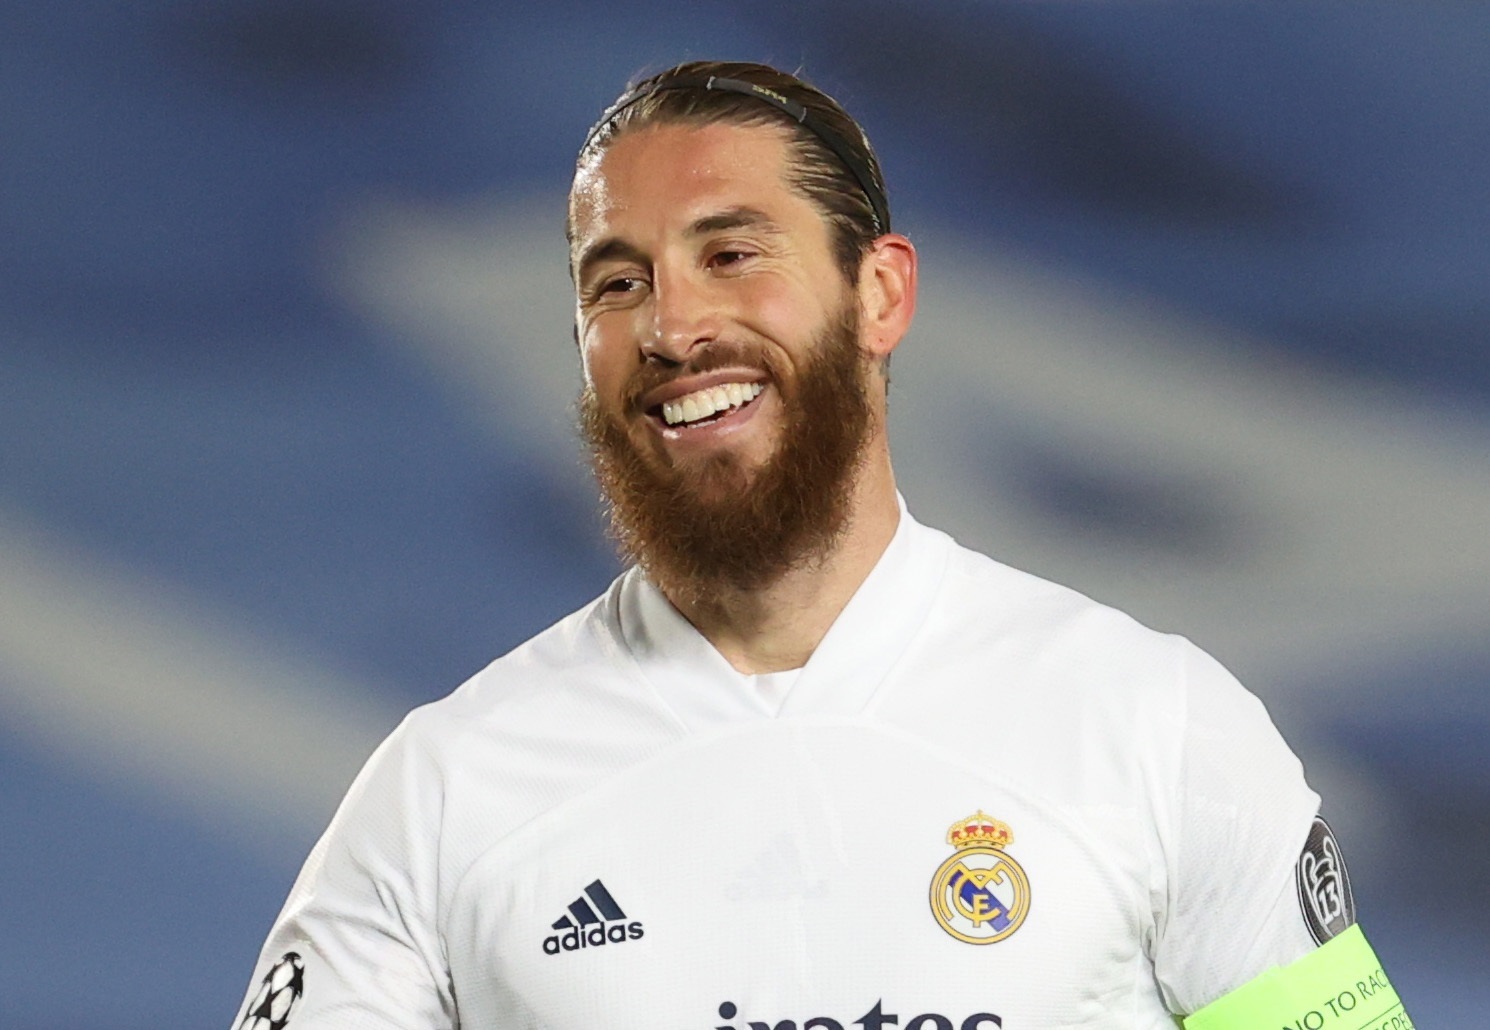 El defensa del Real Madrid Sergio Ramos abandonará el Real Madrid a partir del 1 de julio (Efe)
